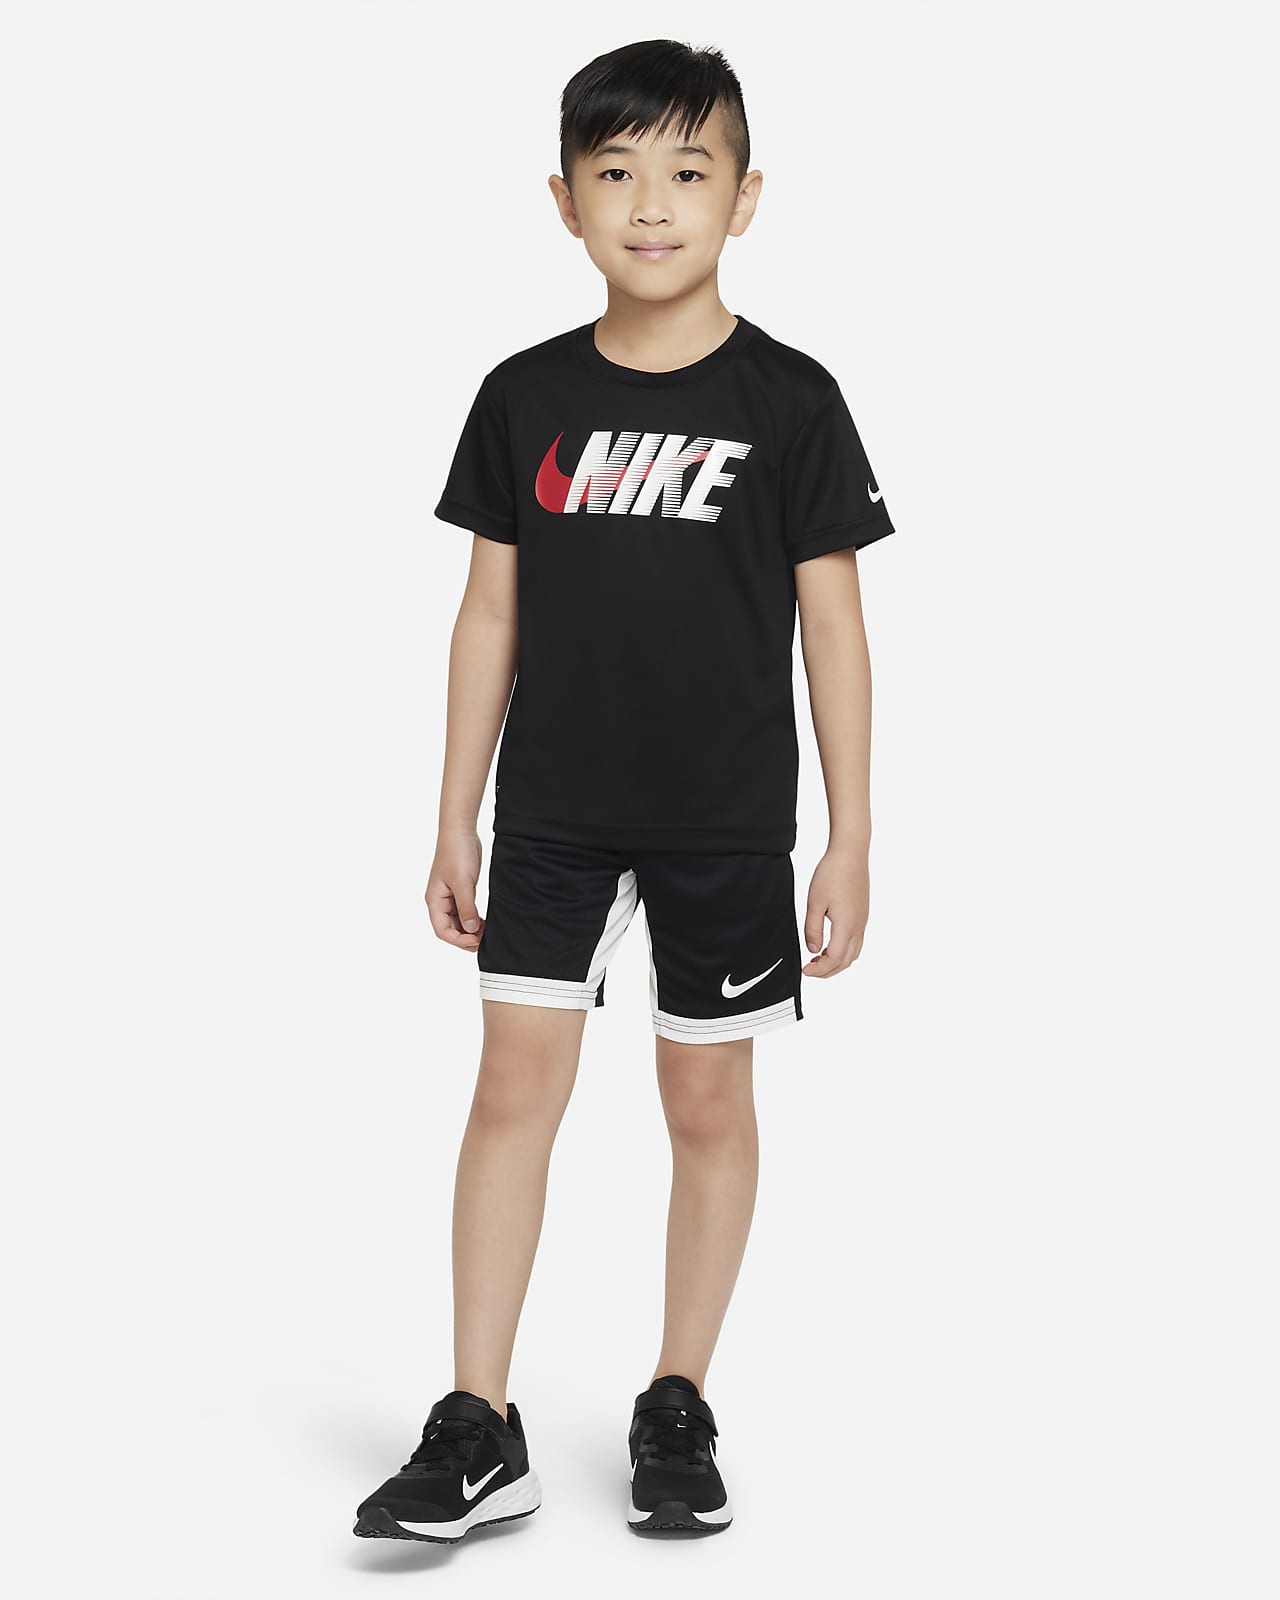 Persona a cargo sal desbloquear Shorts para niños talla pequeña Nike Dri-FIT. Nike.com